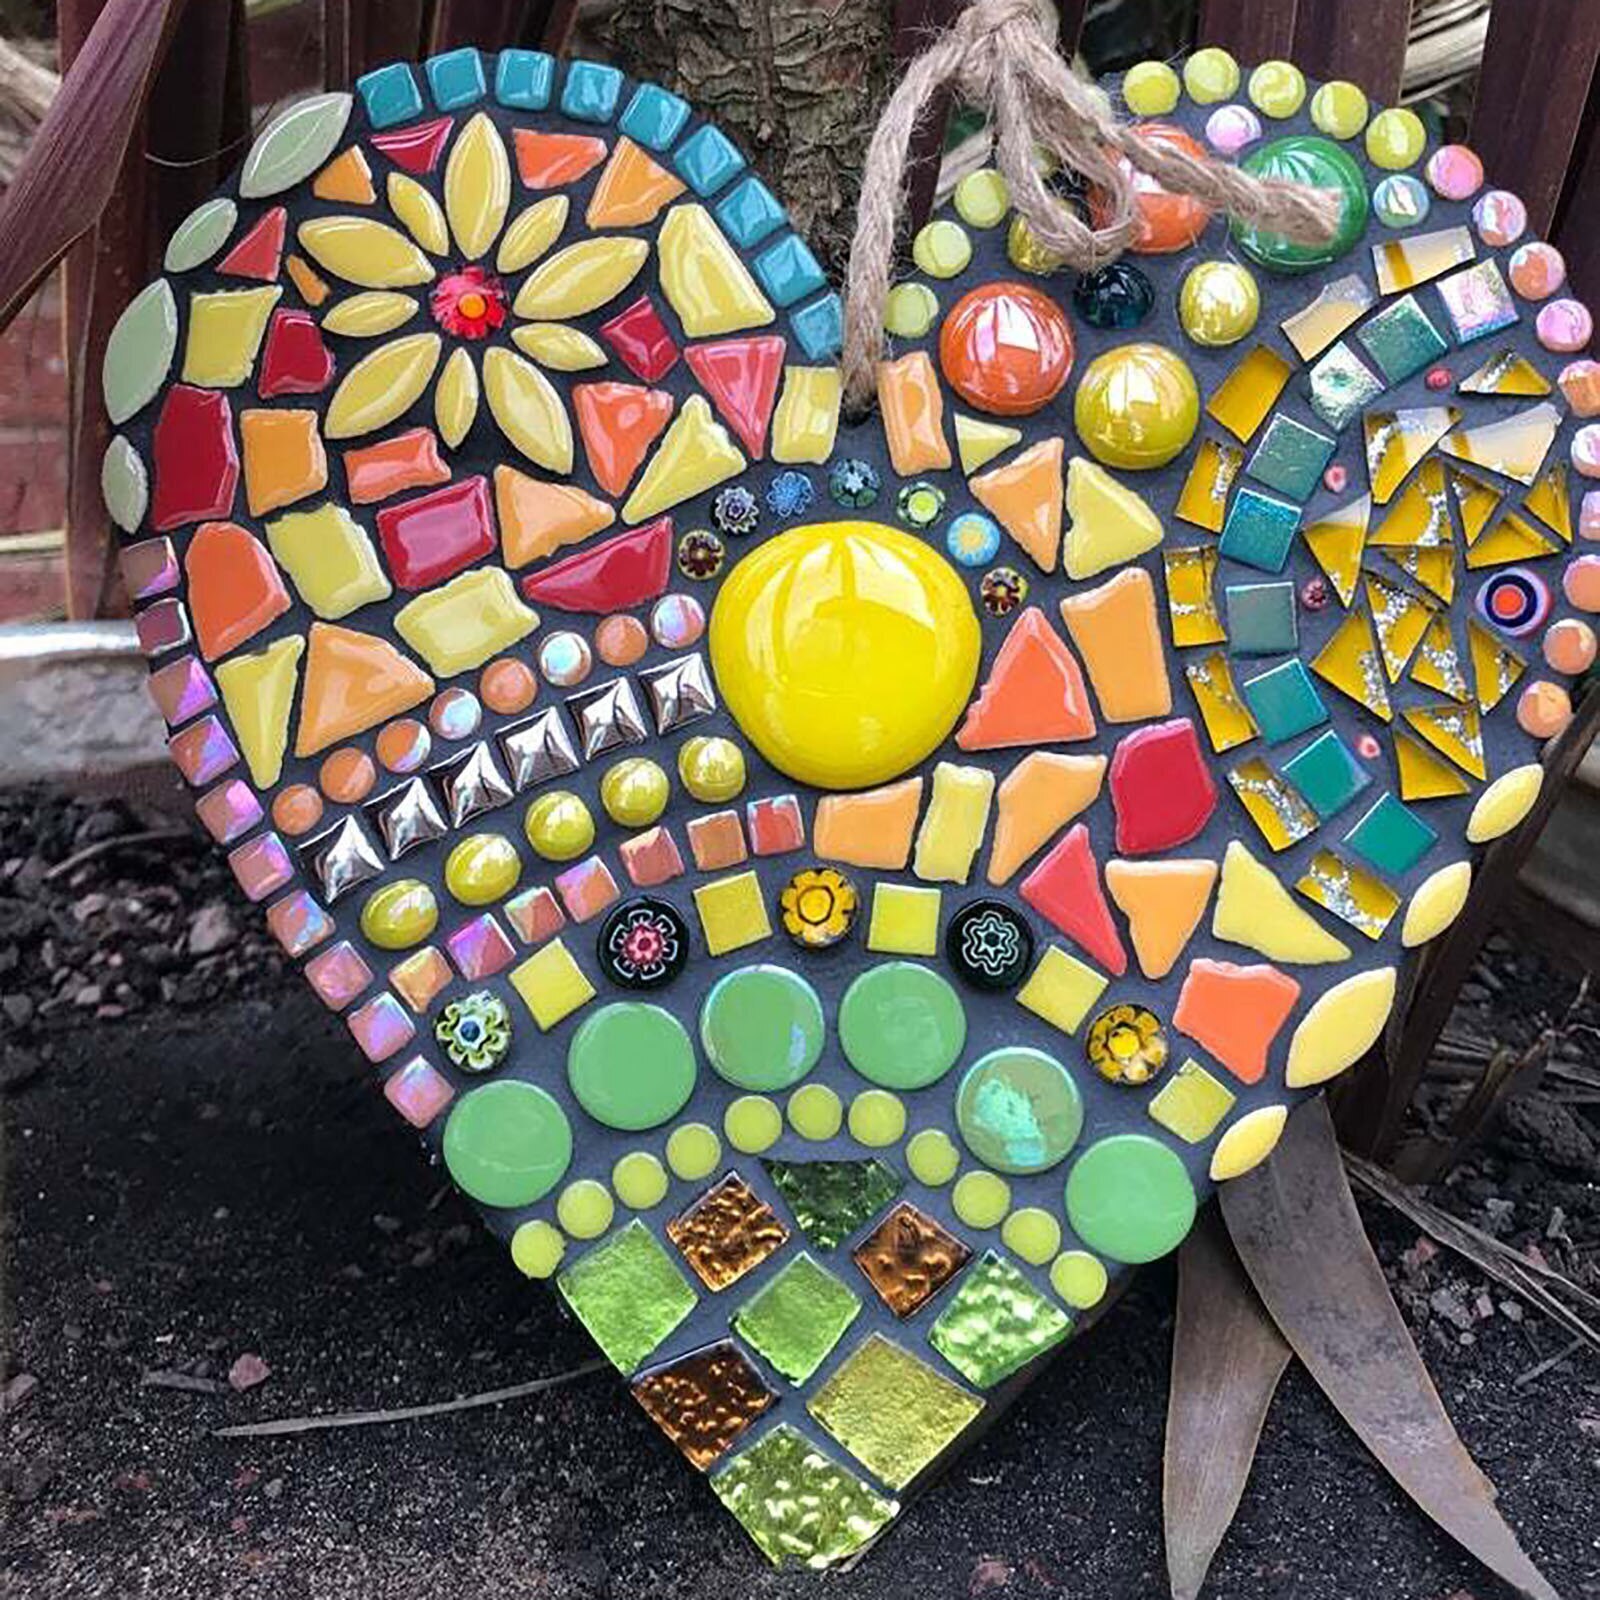 (🔥Hot sale-40% Off🔥)Large garden mosaic heart